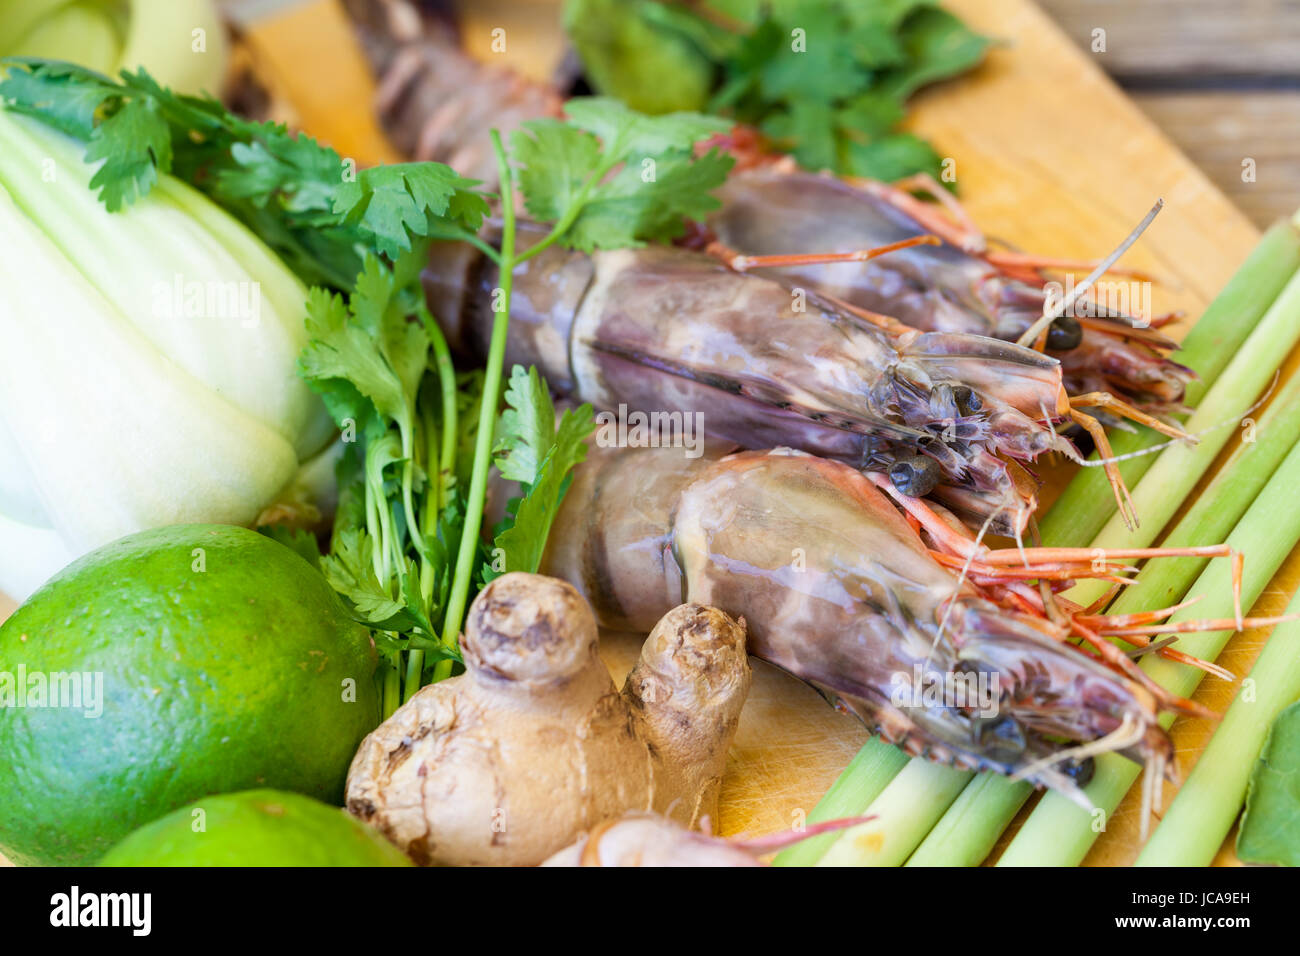 Zutaten für Tom Yam Suppe mit Zitronengras Garnelen Koriander auf einem Küchenbrett Stock Photo